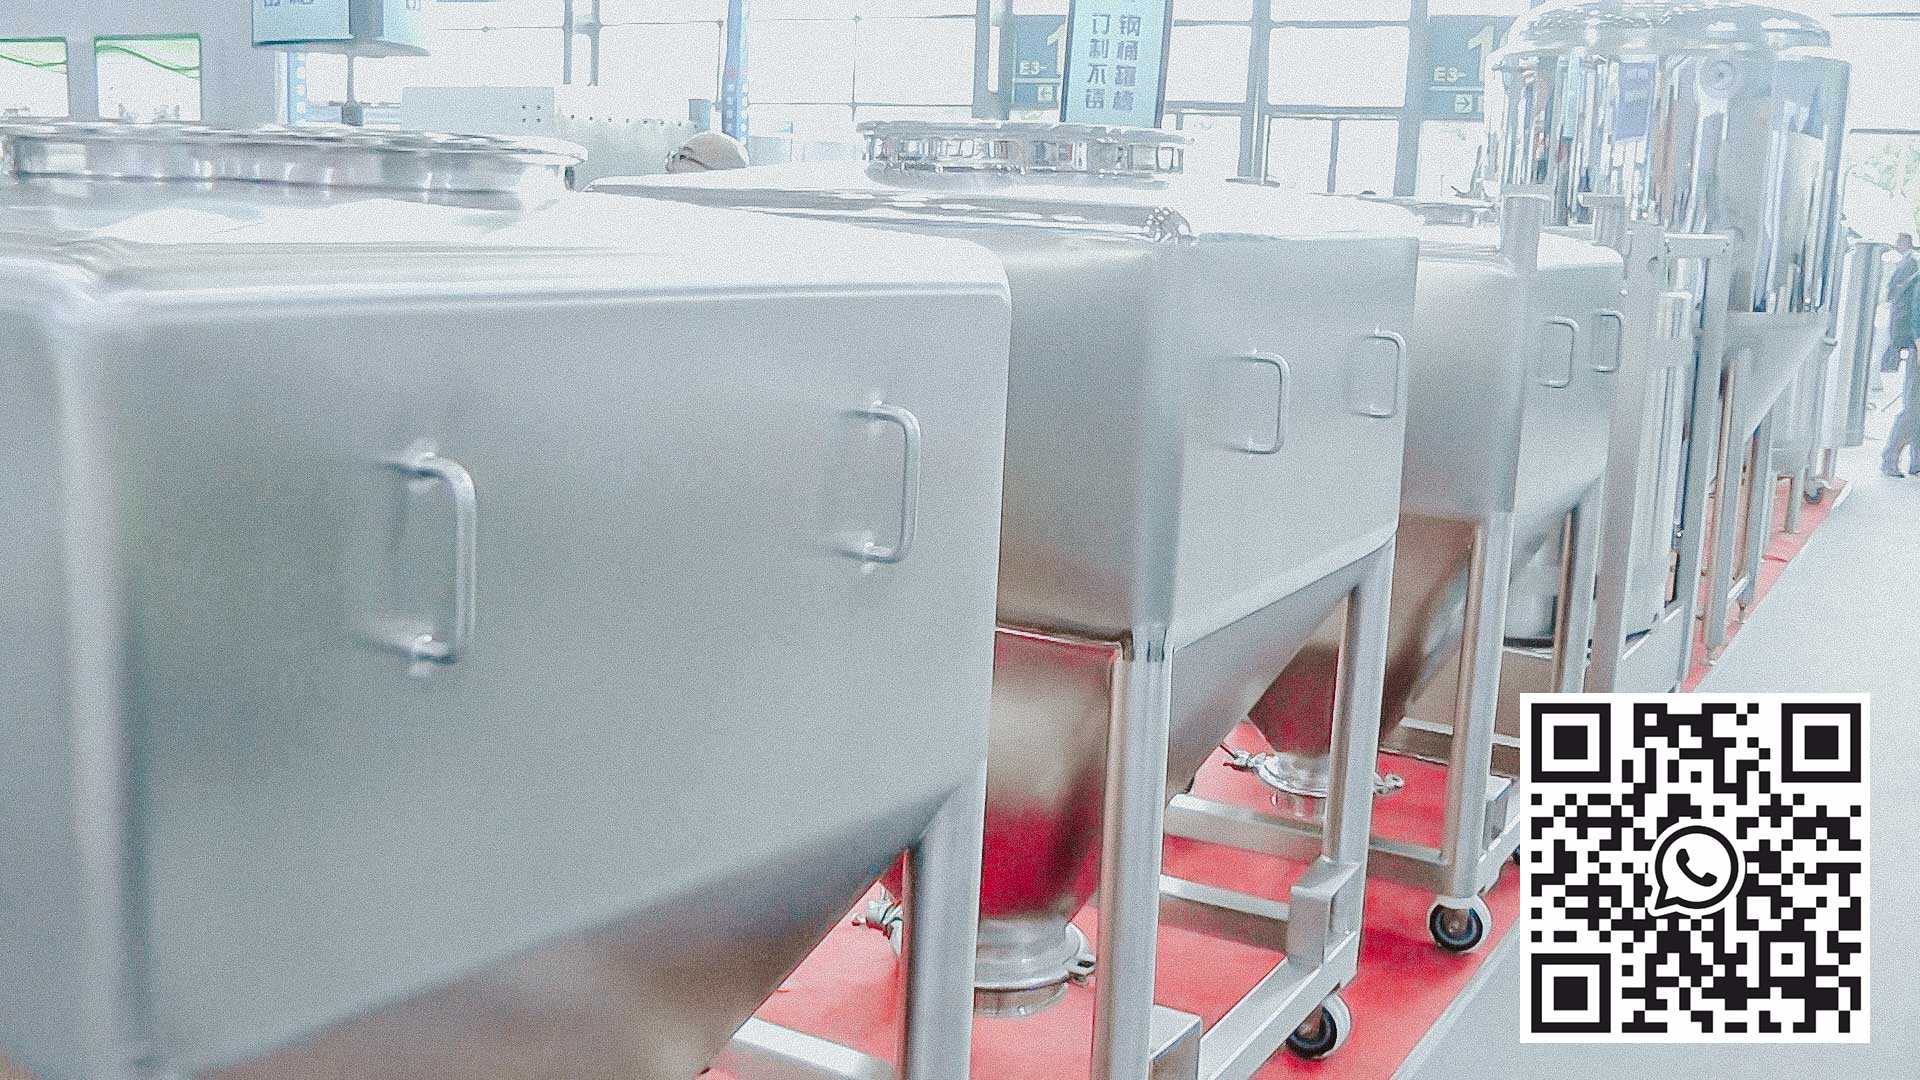 Réservoirs en acier inoxydable pour le stockage et la préparation de médicaments liquides